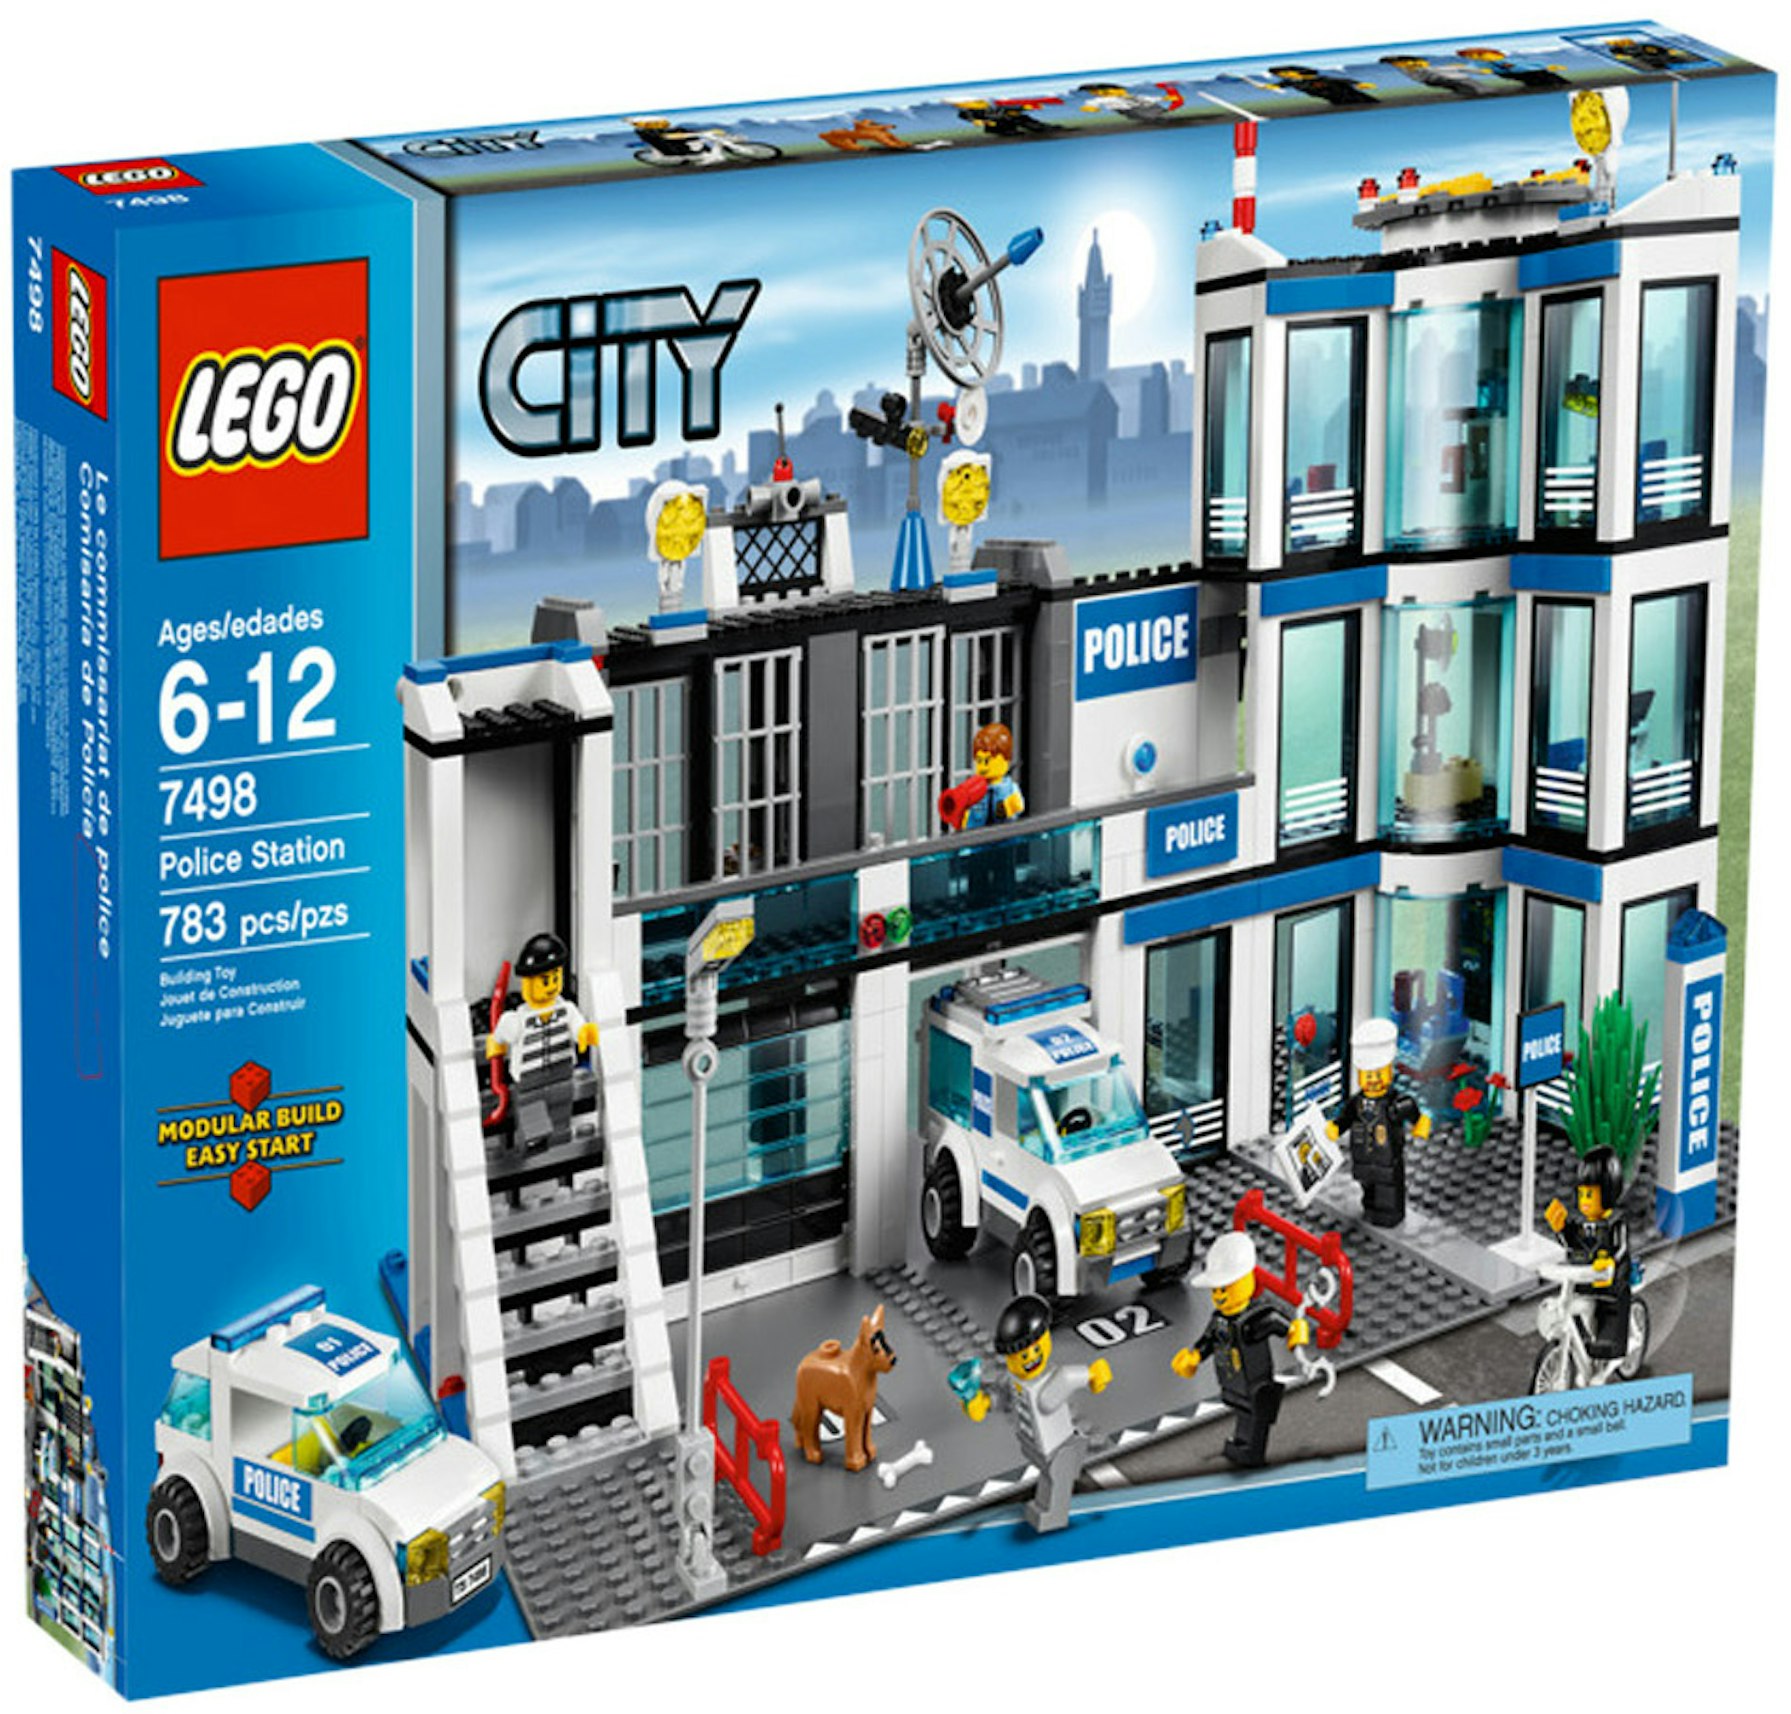 LEGO City Station Set - US